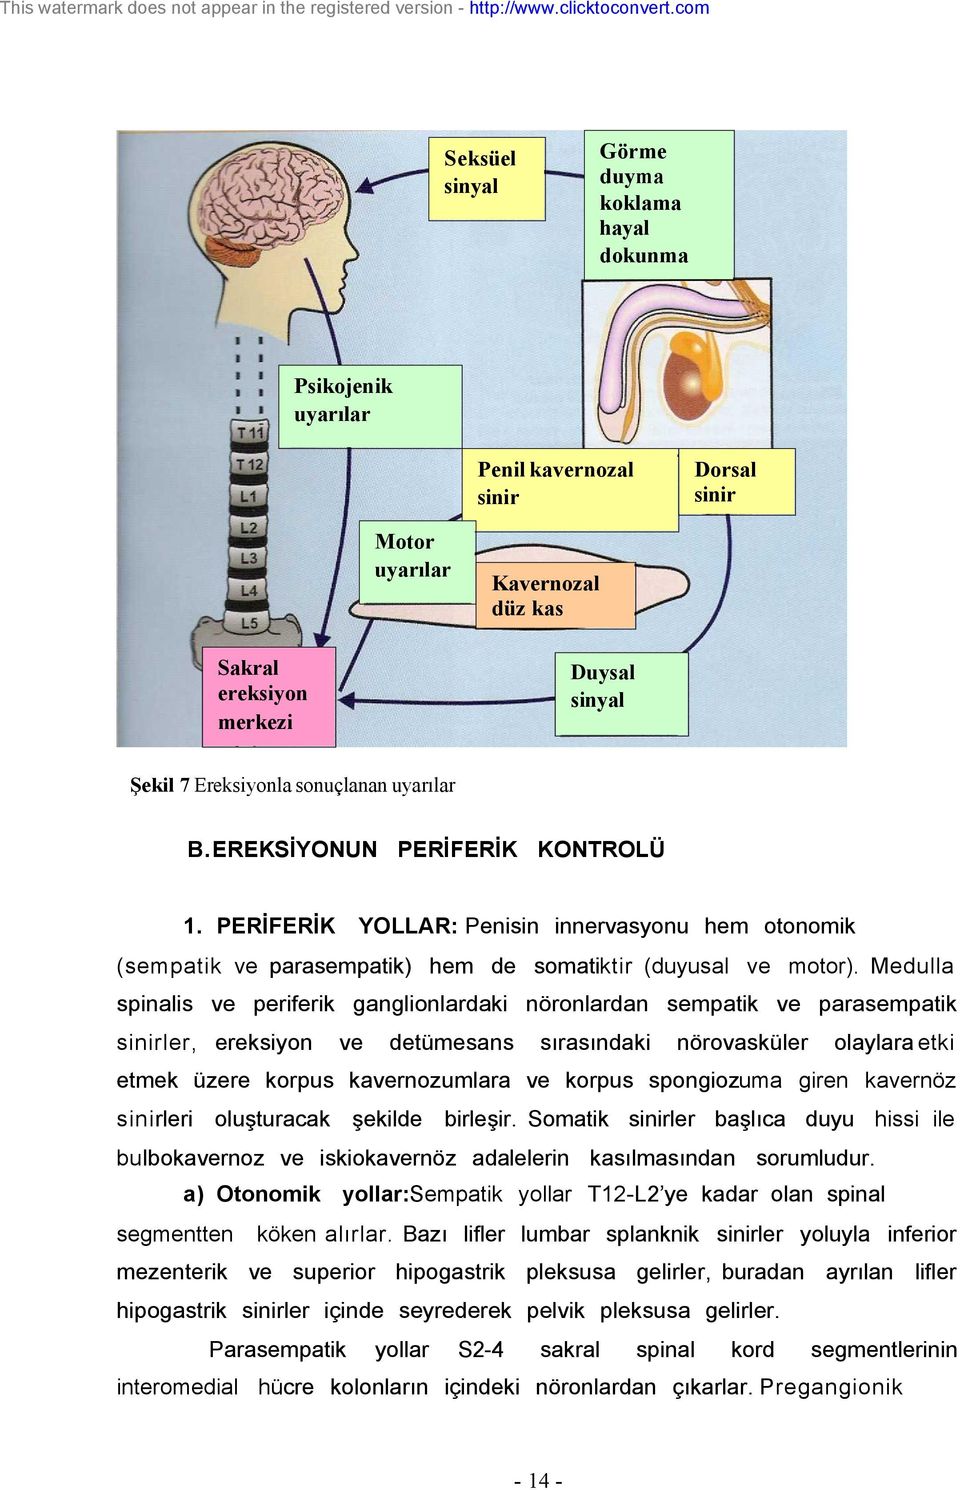 sonuçlanan uyarılar B.EREKSİYONUN PERİFERİK KONTROLÜ 1. PERİFERİK YOLLAR: Penisin innervasyonu hem otonomik (sempatik parasempatik) hem de somatiktir (duyusal motor).